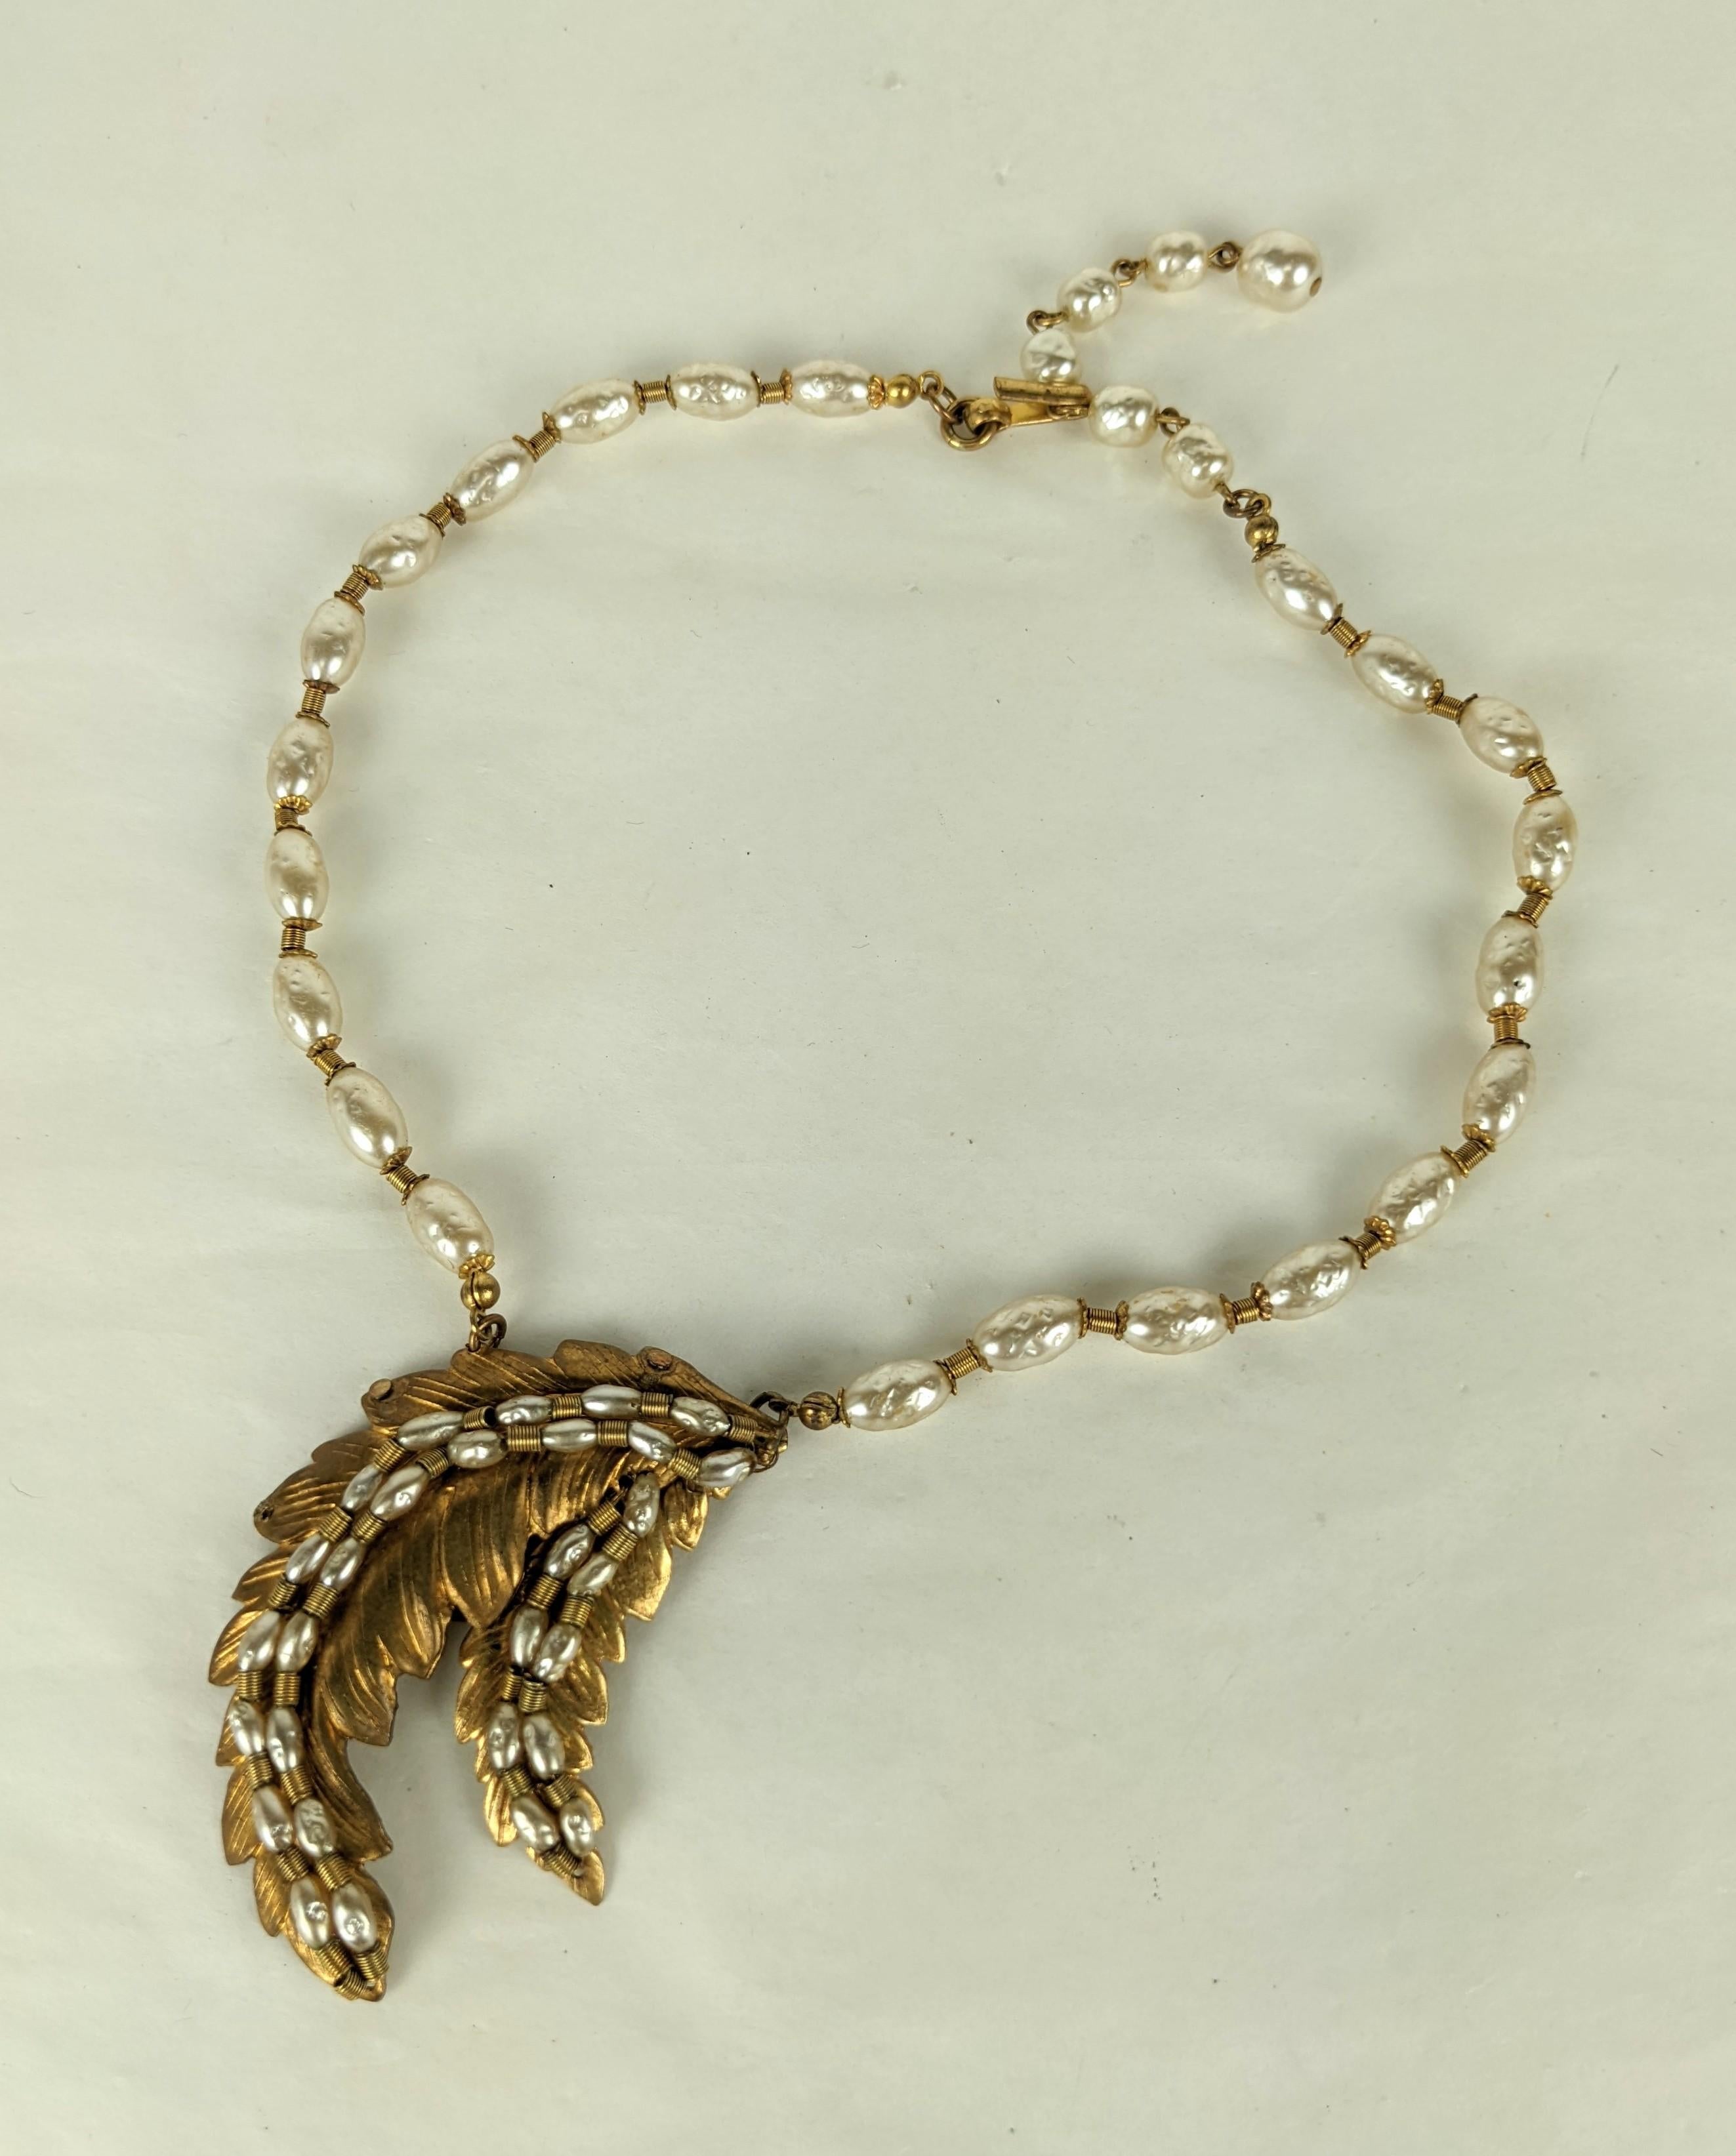 Miriam Haskell klassische Faux Barock Perle und Russisch vergoldet Platte Doppel Farn Frond Halskette. Bestehend aus runden und unterschiedlich großen Reisperlen mit vergoldeten russischen Rondellen. 
Ausgezeichneter Zustand. 
Länge  14